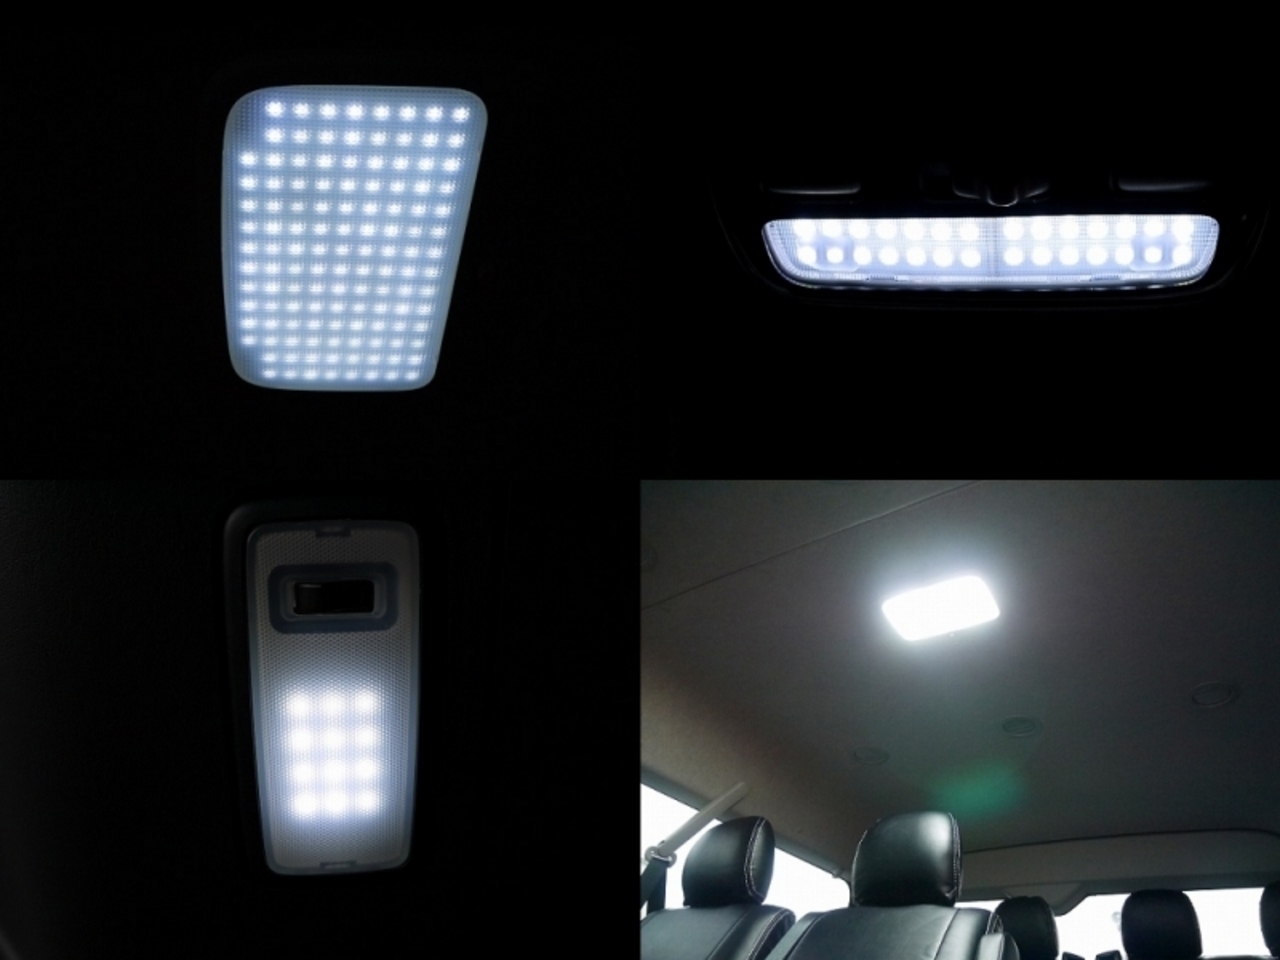 ハイエースナローボディーバン ライトキャンピングカー【FD-BOX V08-N】 LEDルームランプセットは標準装備